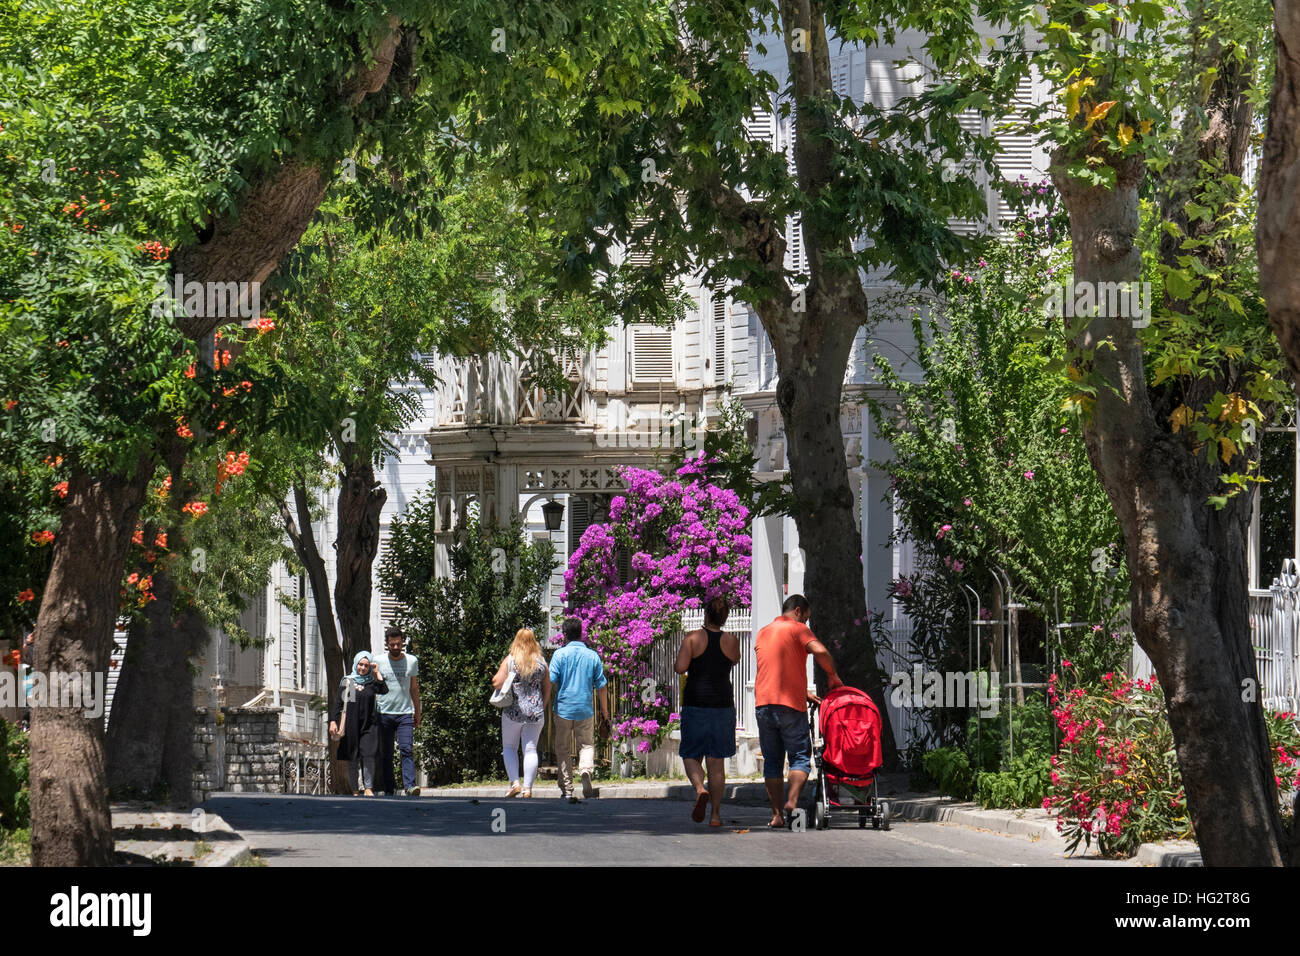 La gente caminando en Maden barrio en Buyukada isla.Buyukada es el más grande de los nueve llamados príncipes' islas en el Mar de Mármara, cerca de Estambul, con un área de 5 km2. Oficialmente, es un barrio en Adalar (islas), distrito de la provincia de Estambul, Turquía. Foto de stock